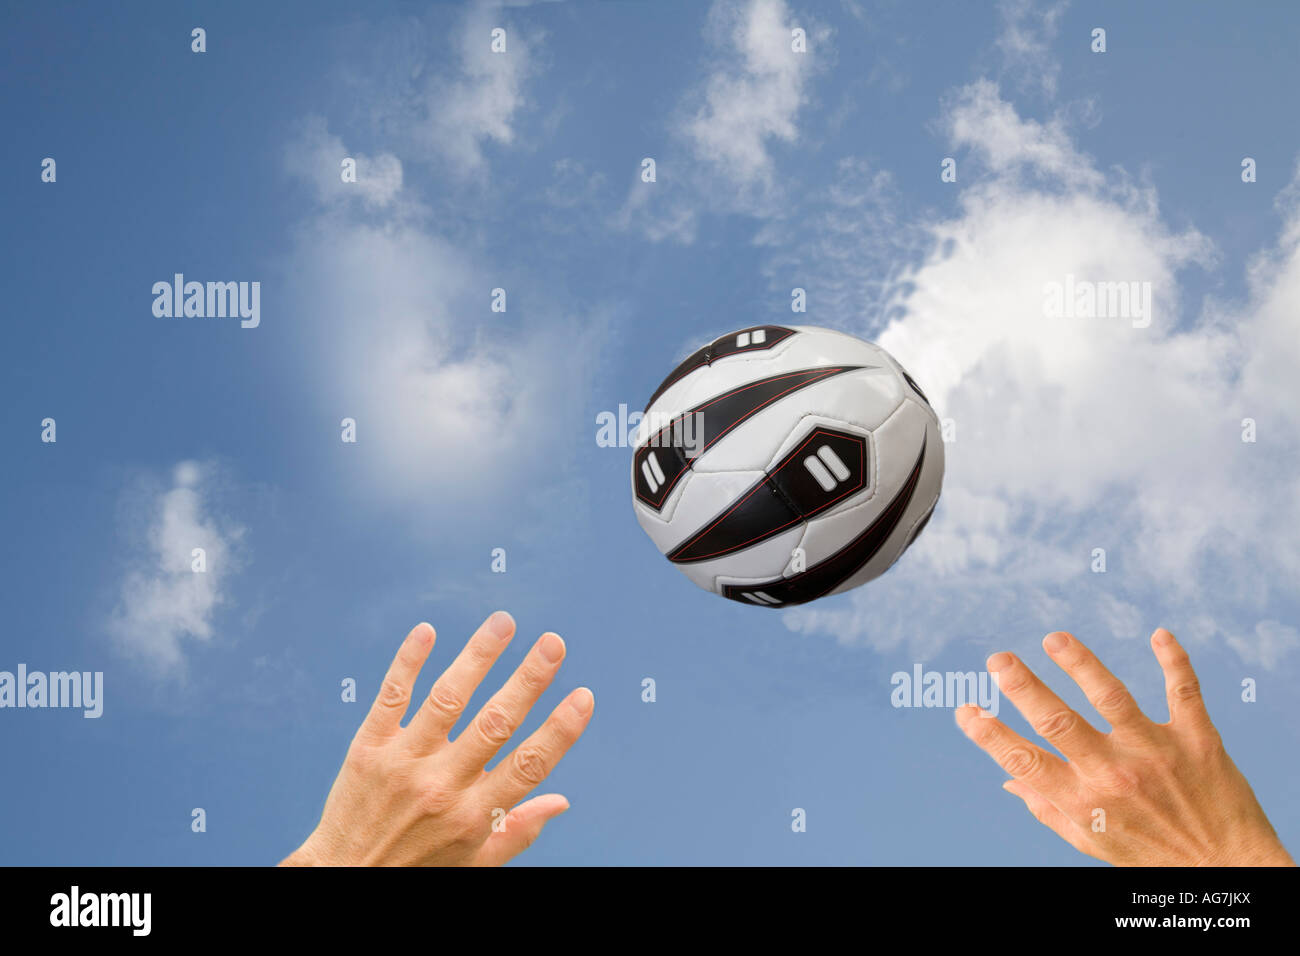 Monolocale due mani fino a raggiungere un netball in un cielo blu Foto Stock